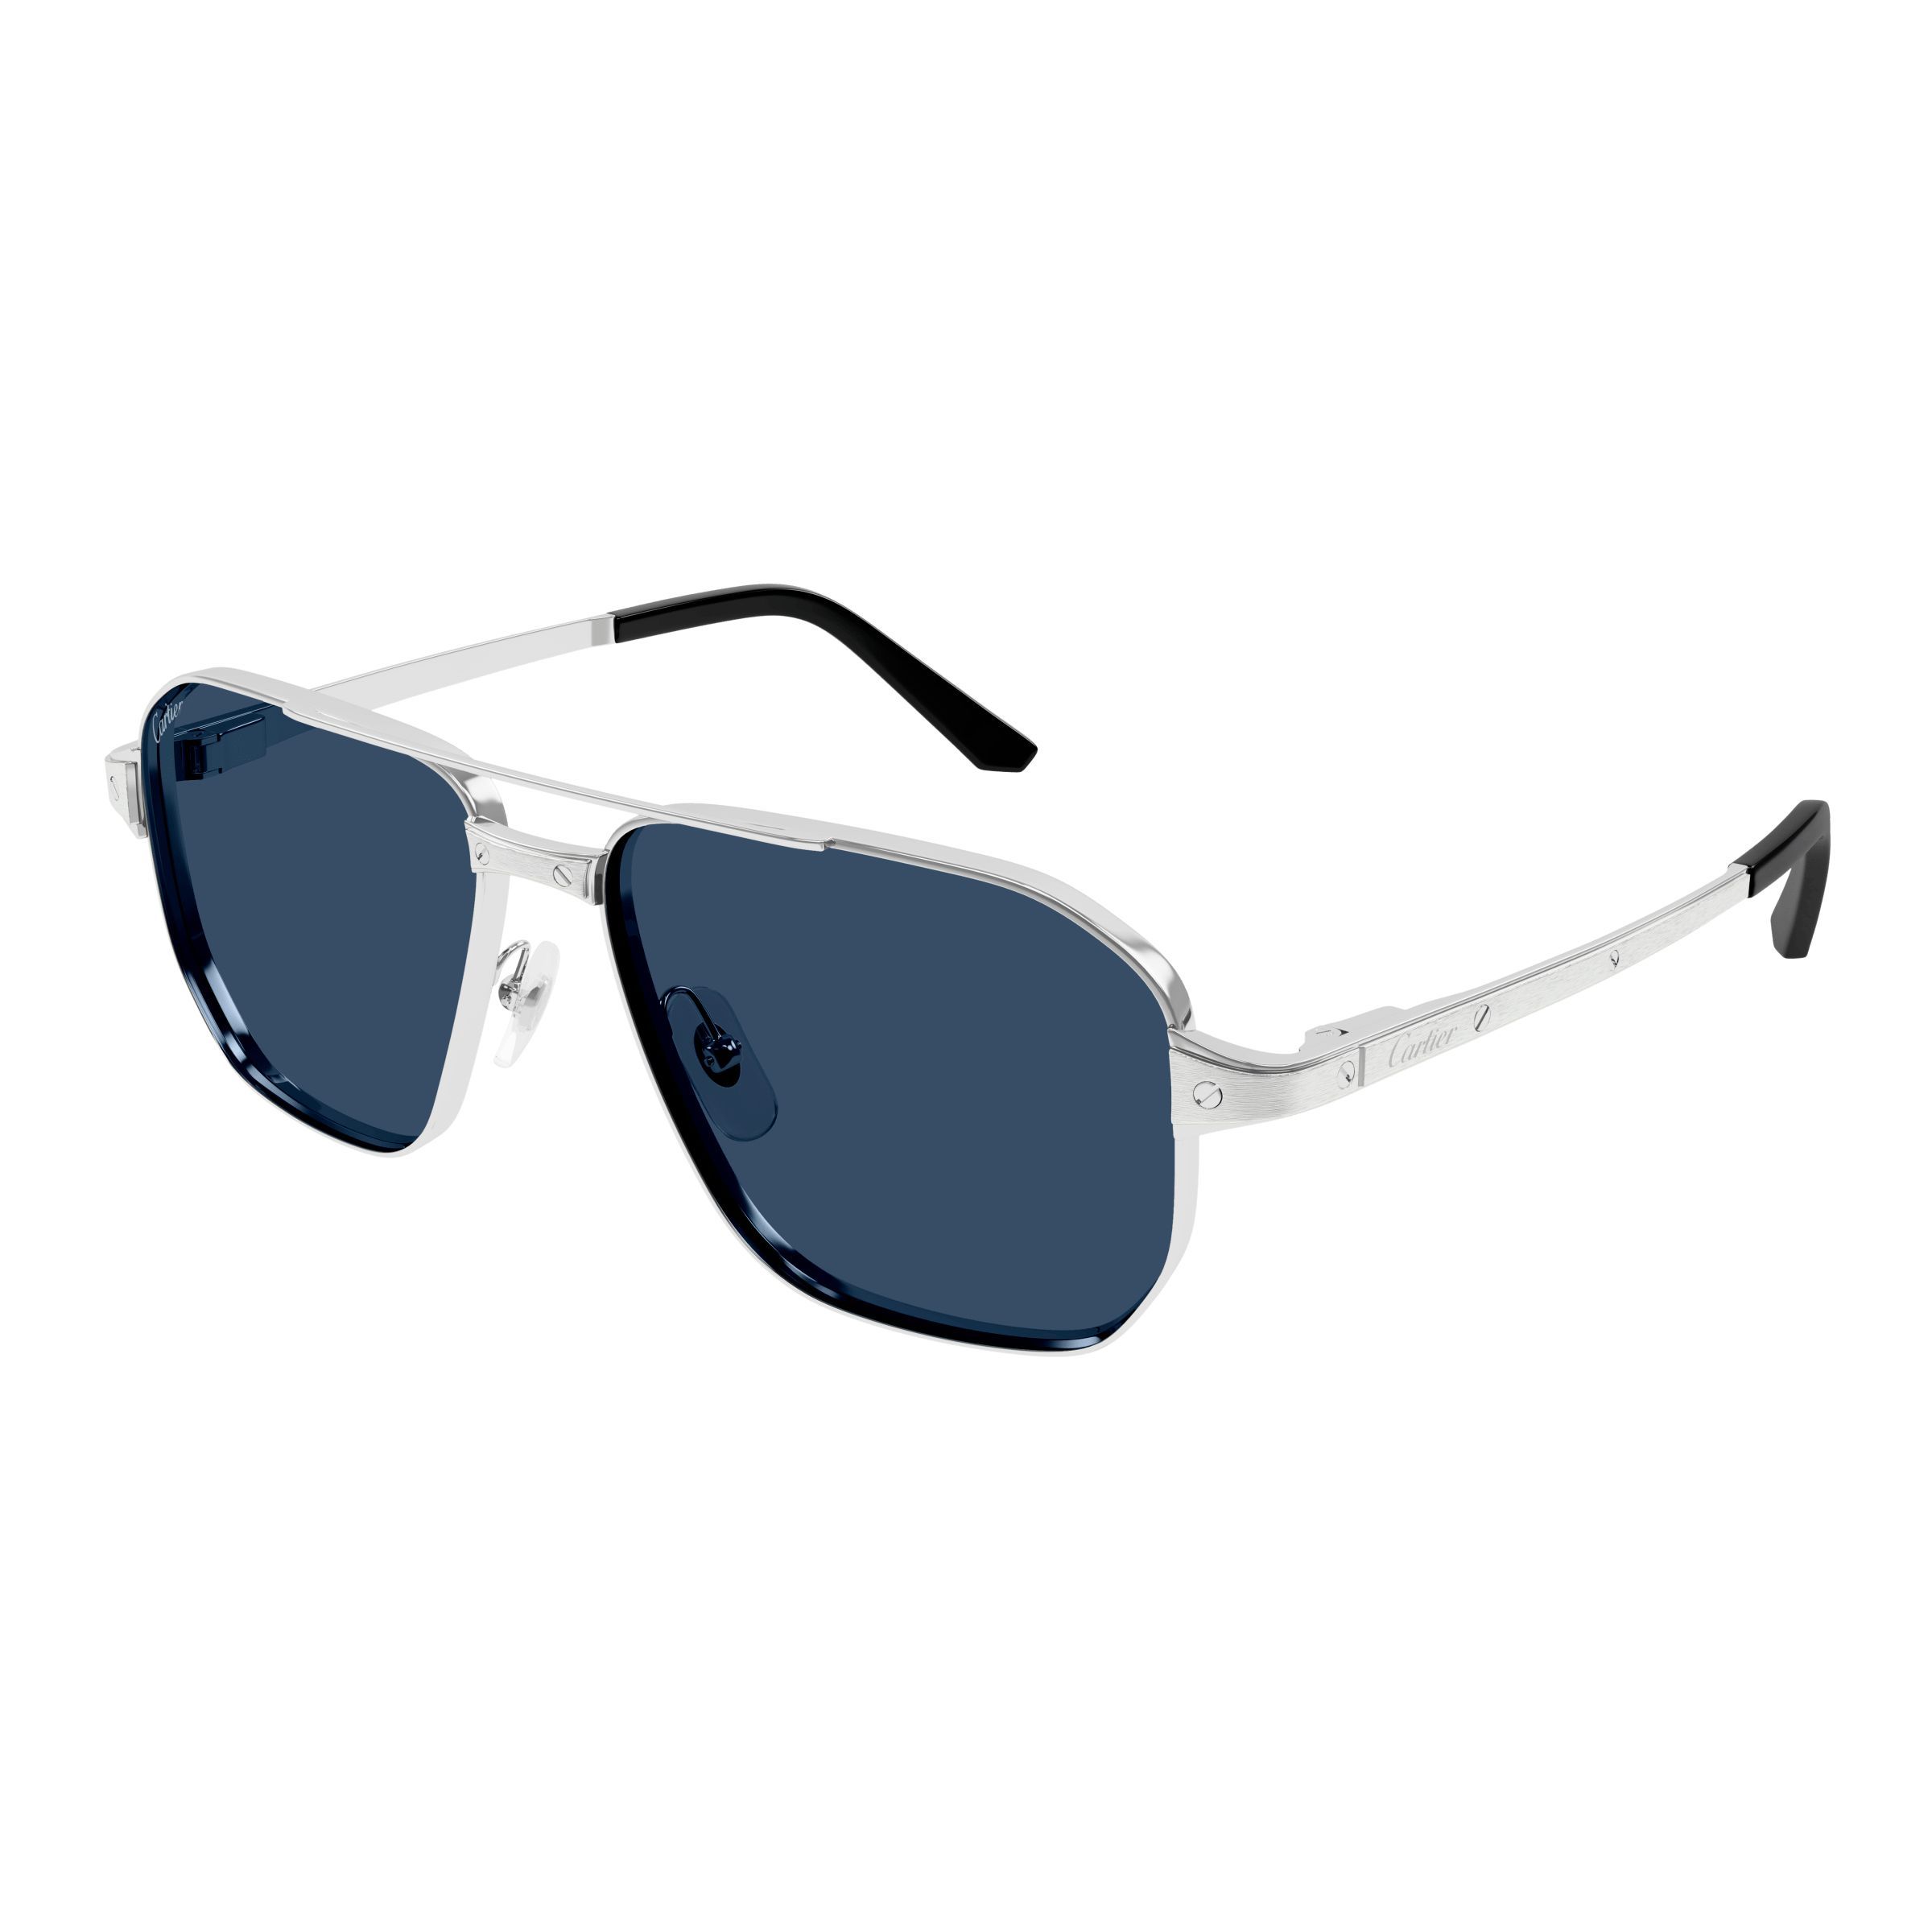 CT0424S Square Sunglasses 004 - size 59